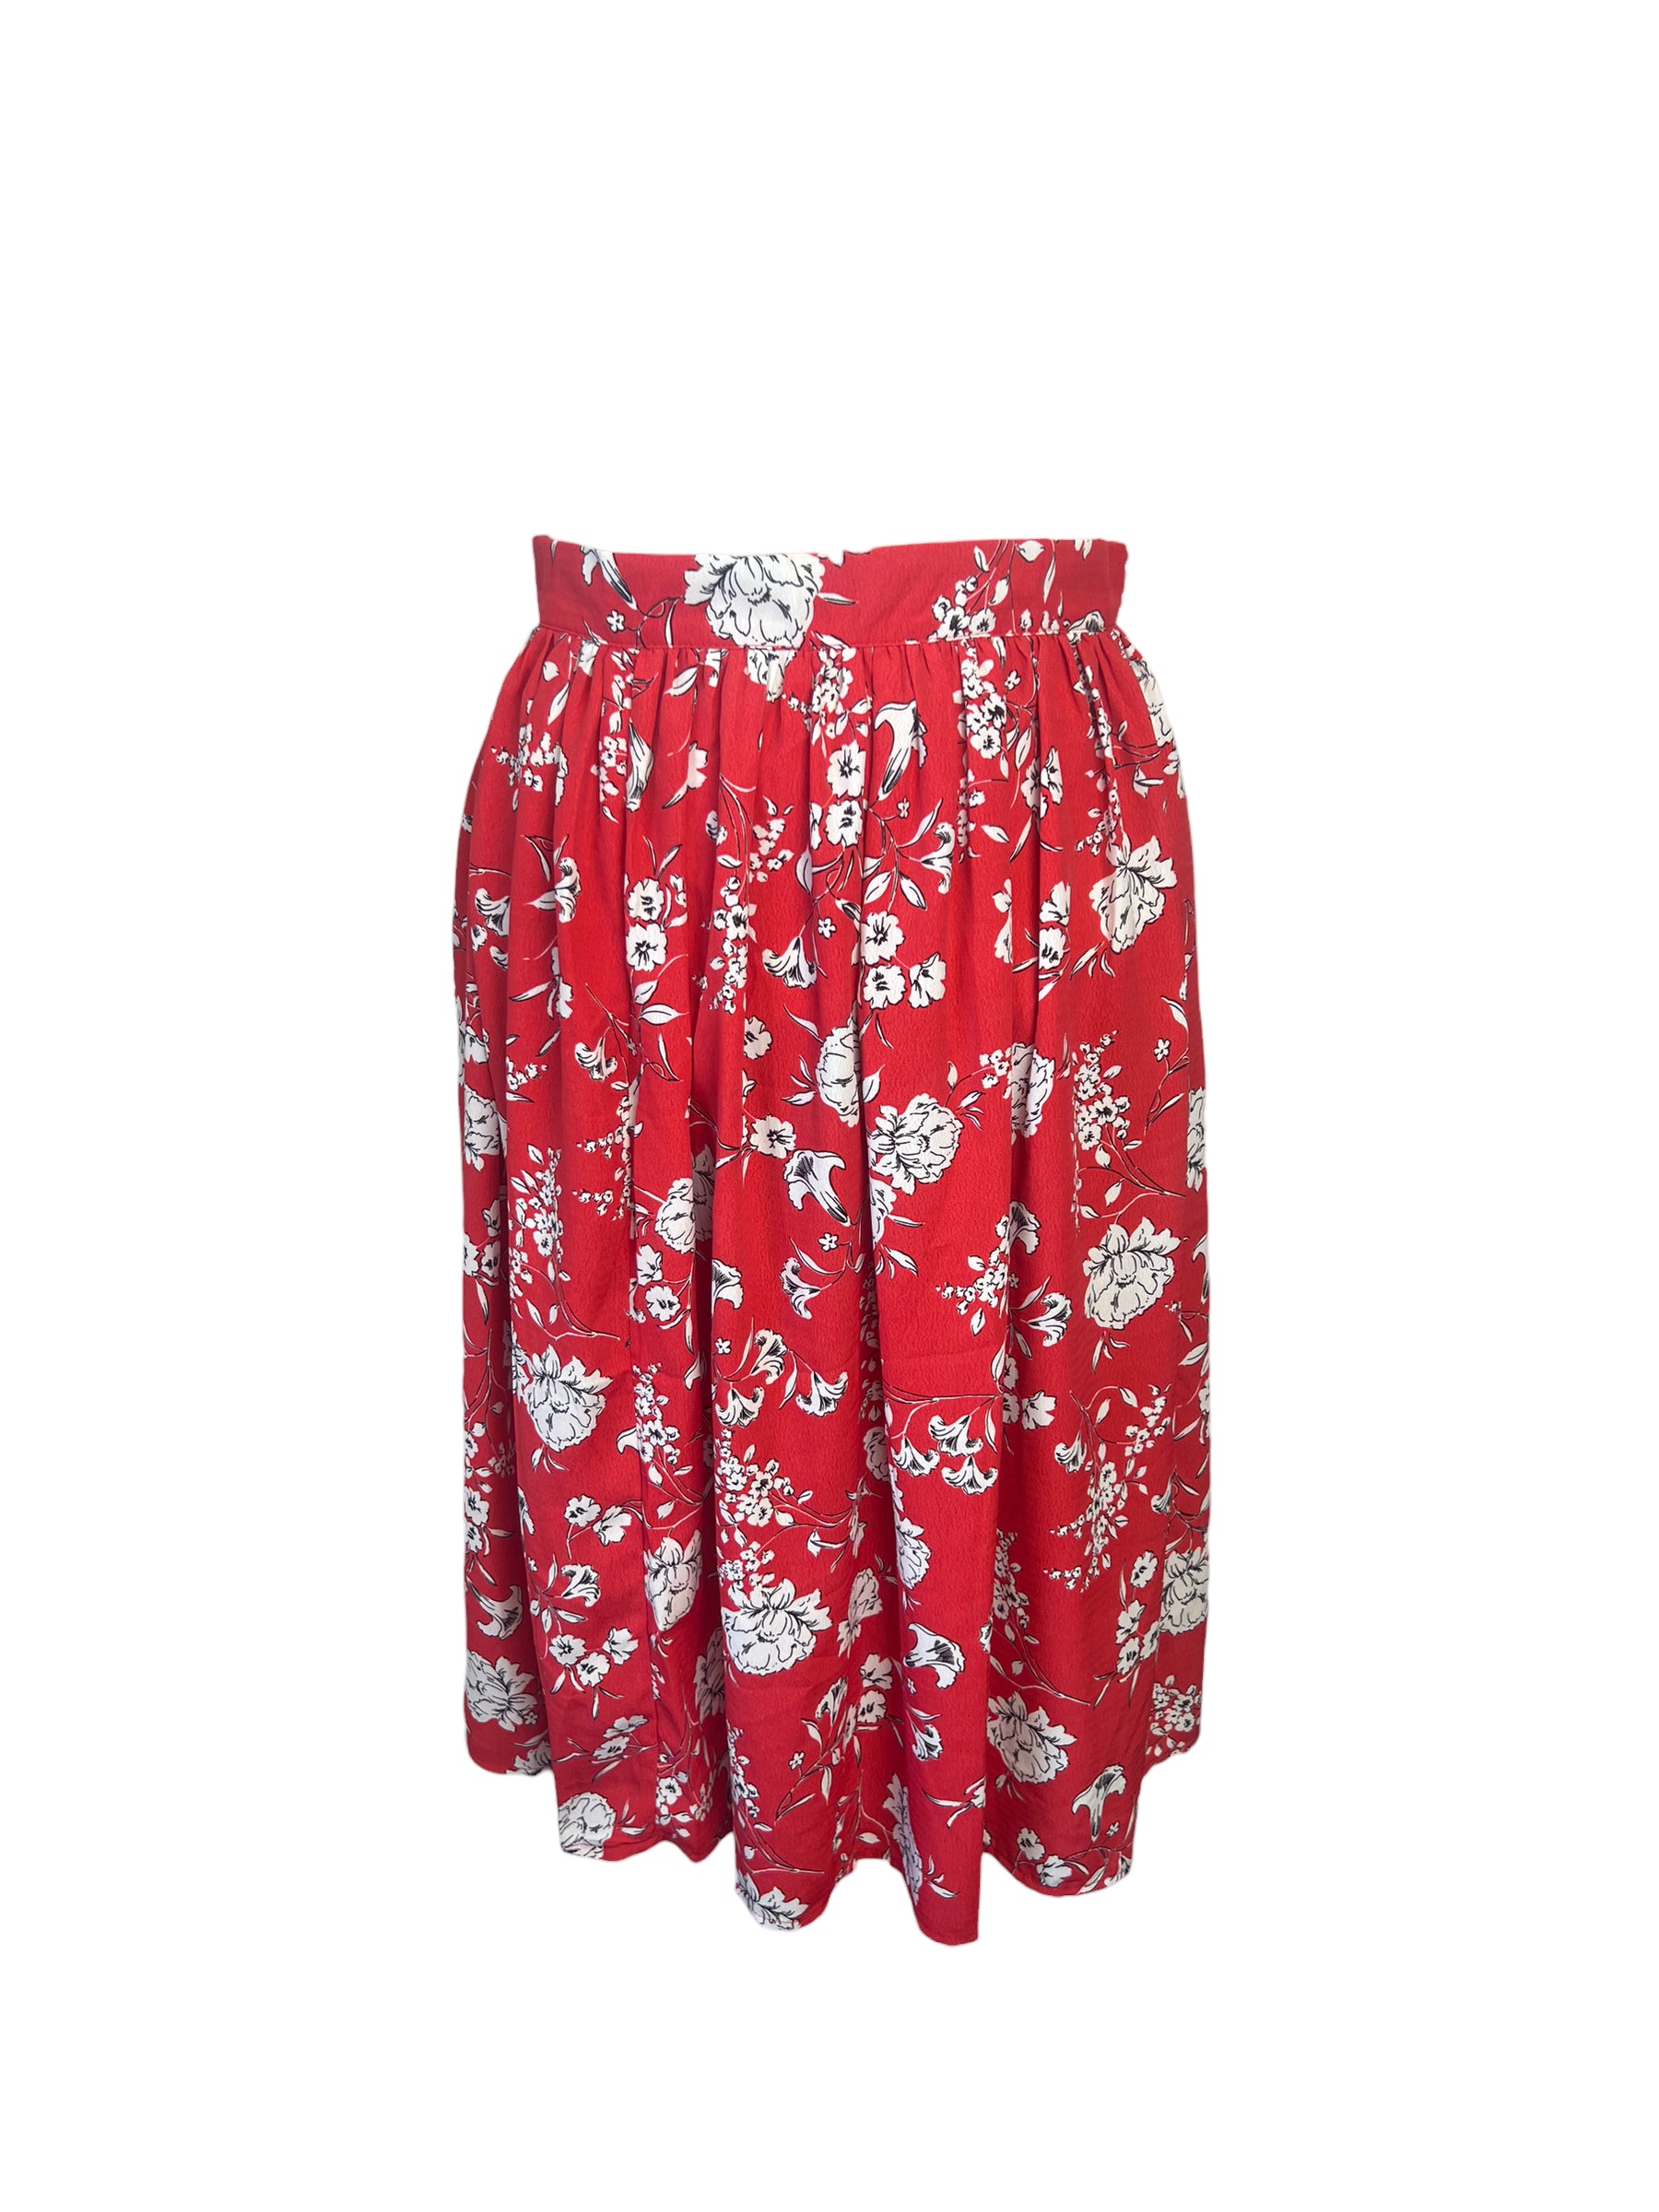 Daphnea Paris Floral Skirt